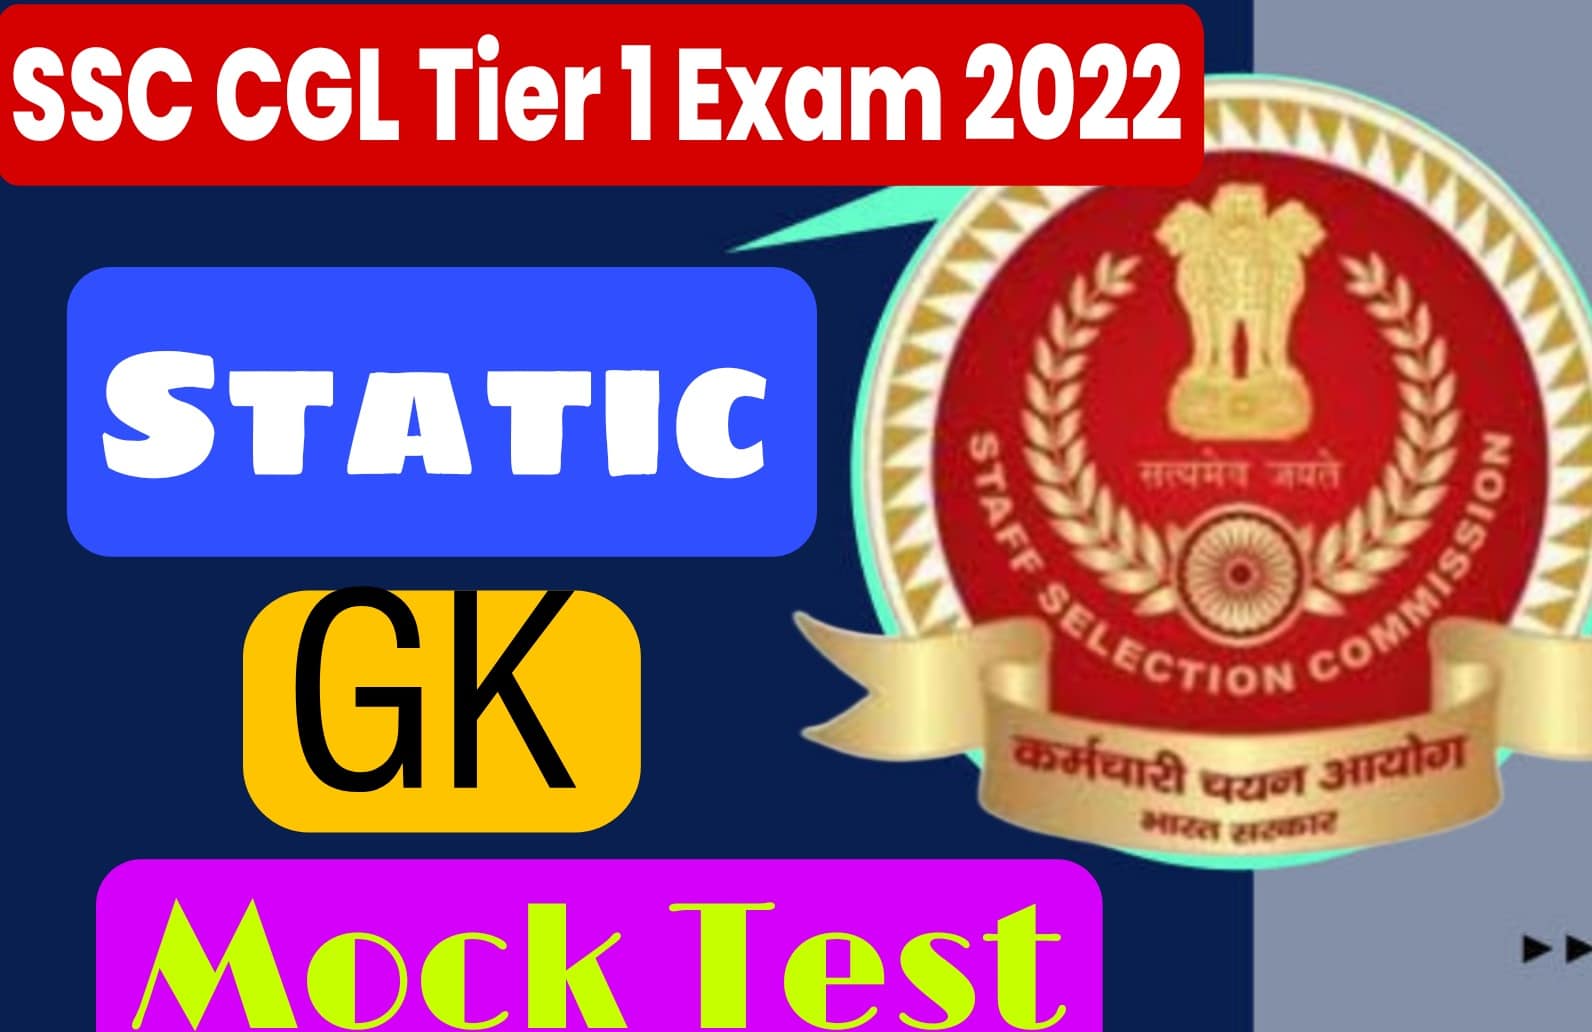 SSC CGL Tier 1 Exam 2022 Static GK | परीक्षा से पहले मुख्य प्रश्नों का अध्ययन जरूर करें